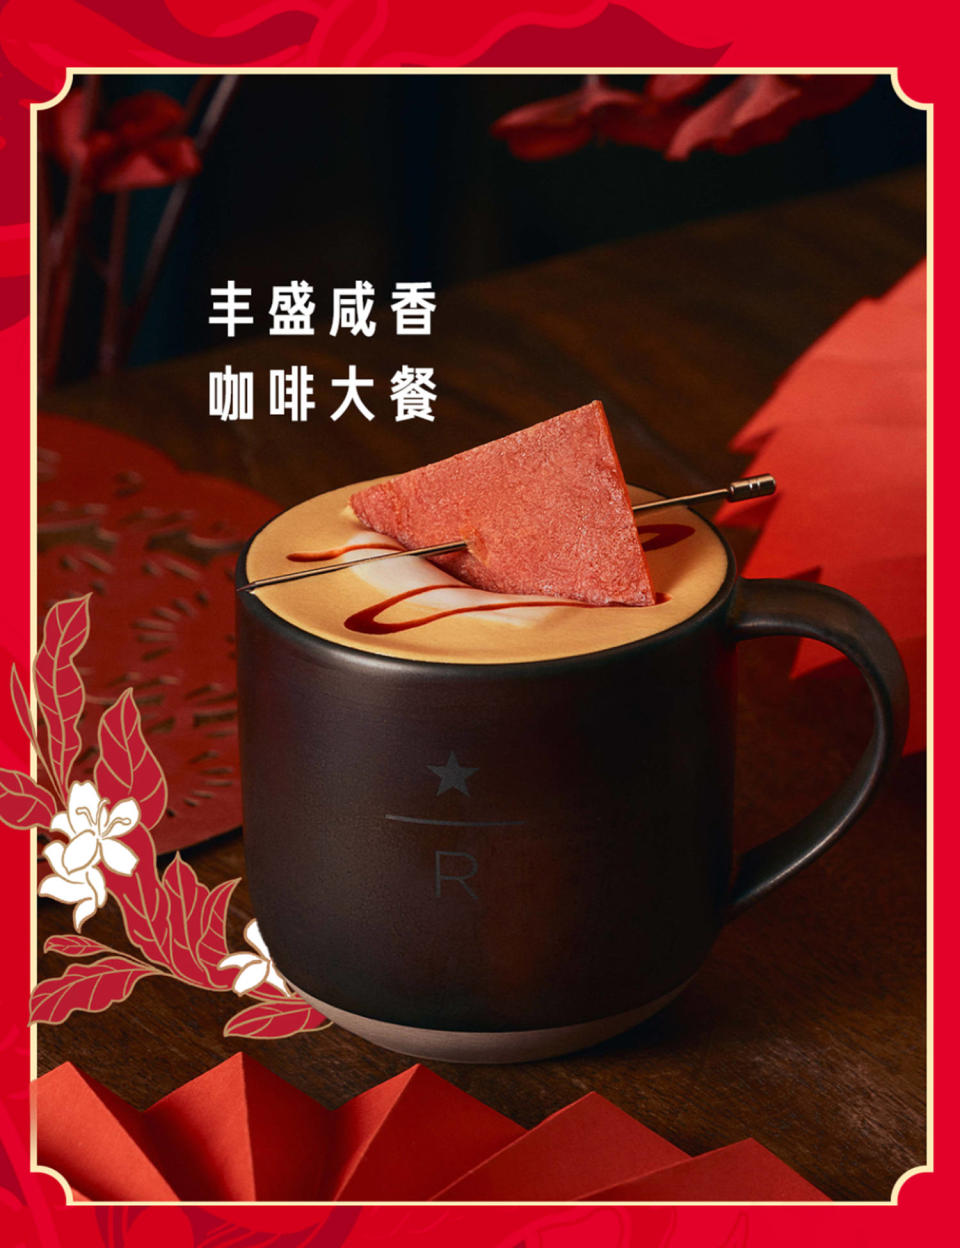 Starbucks China’s Lucky Savory Latte. (Starbucks)